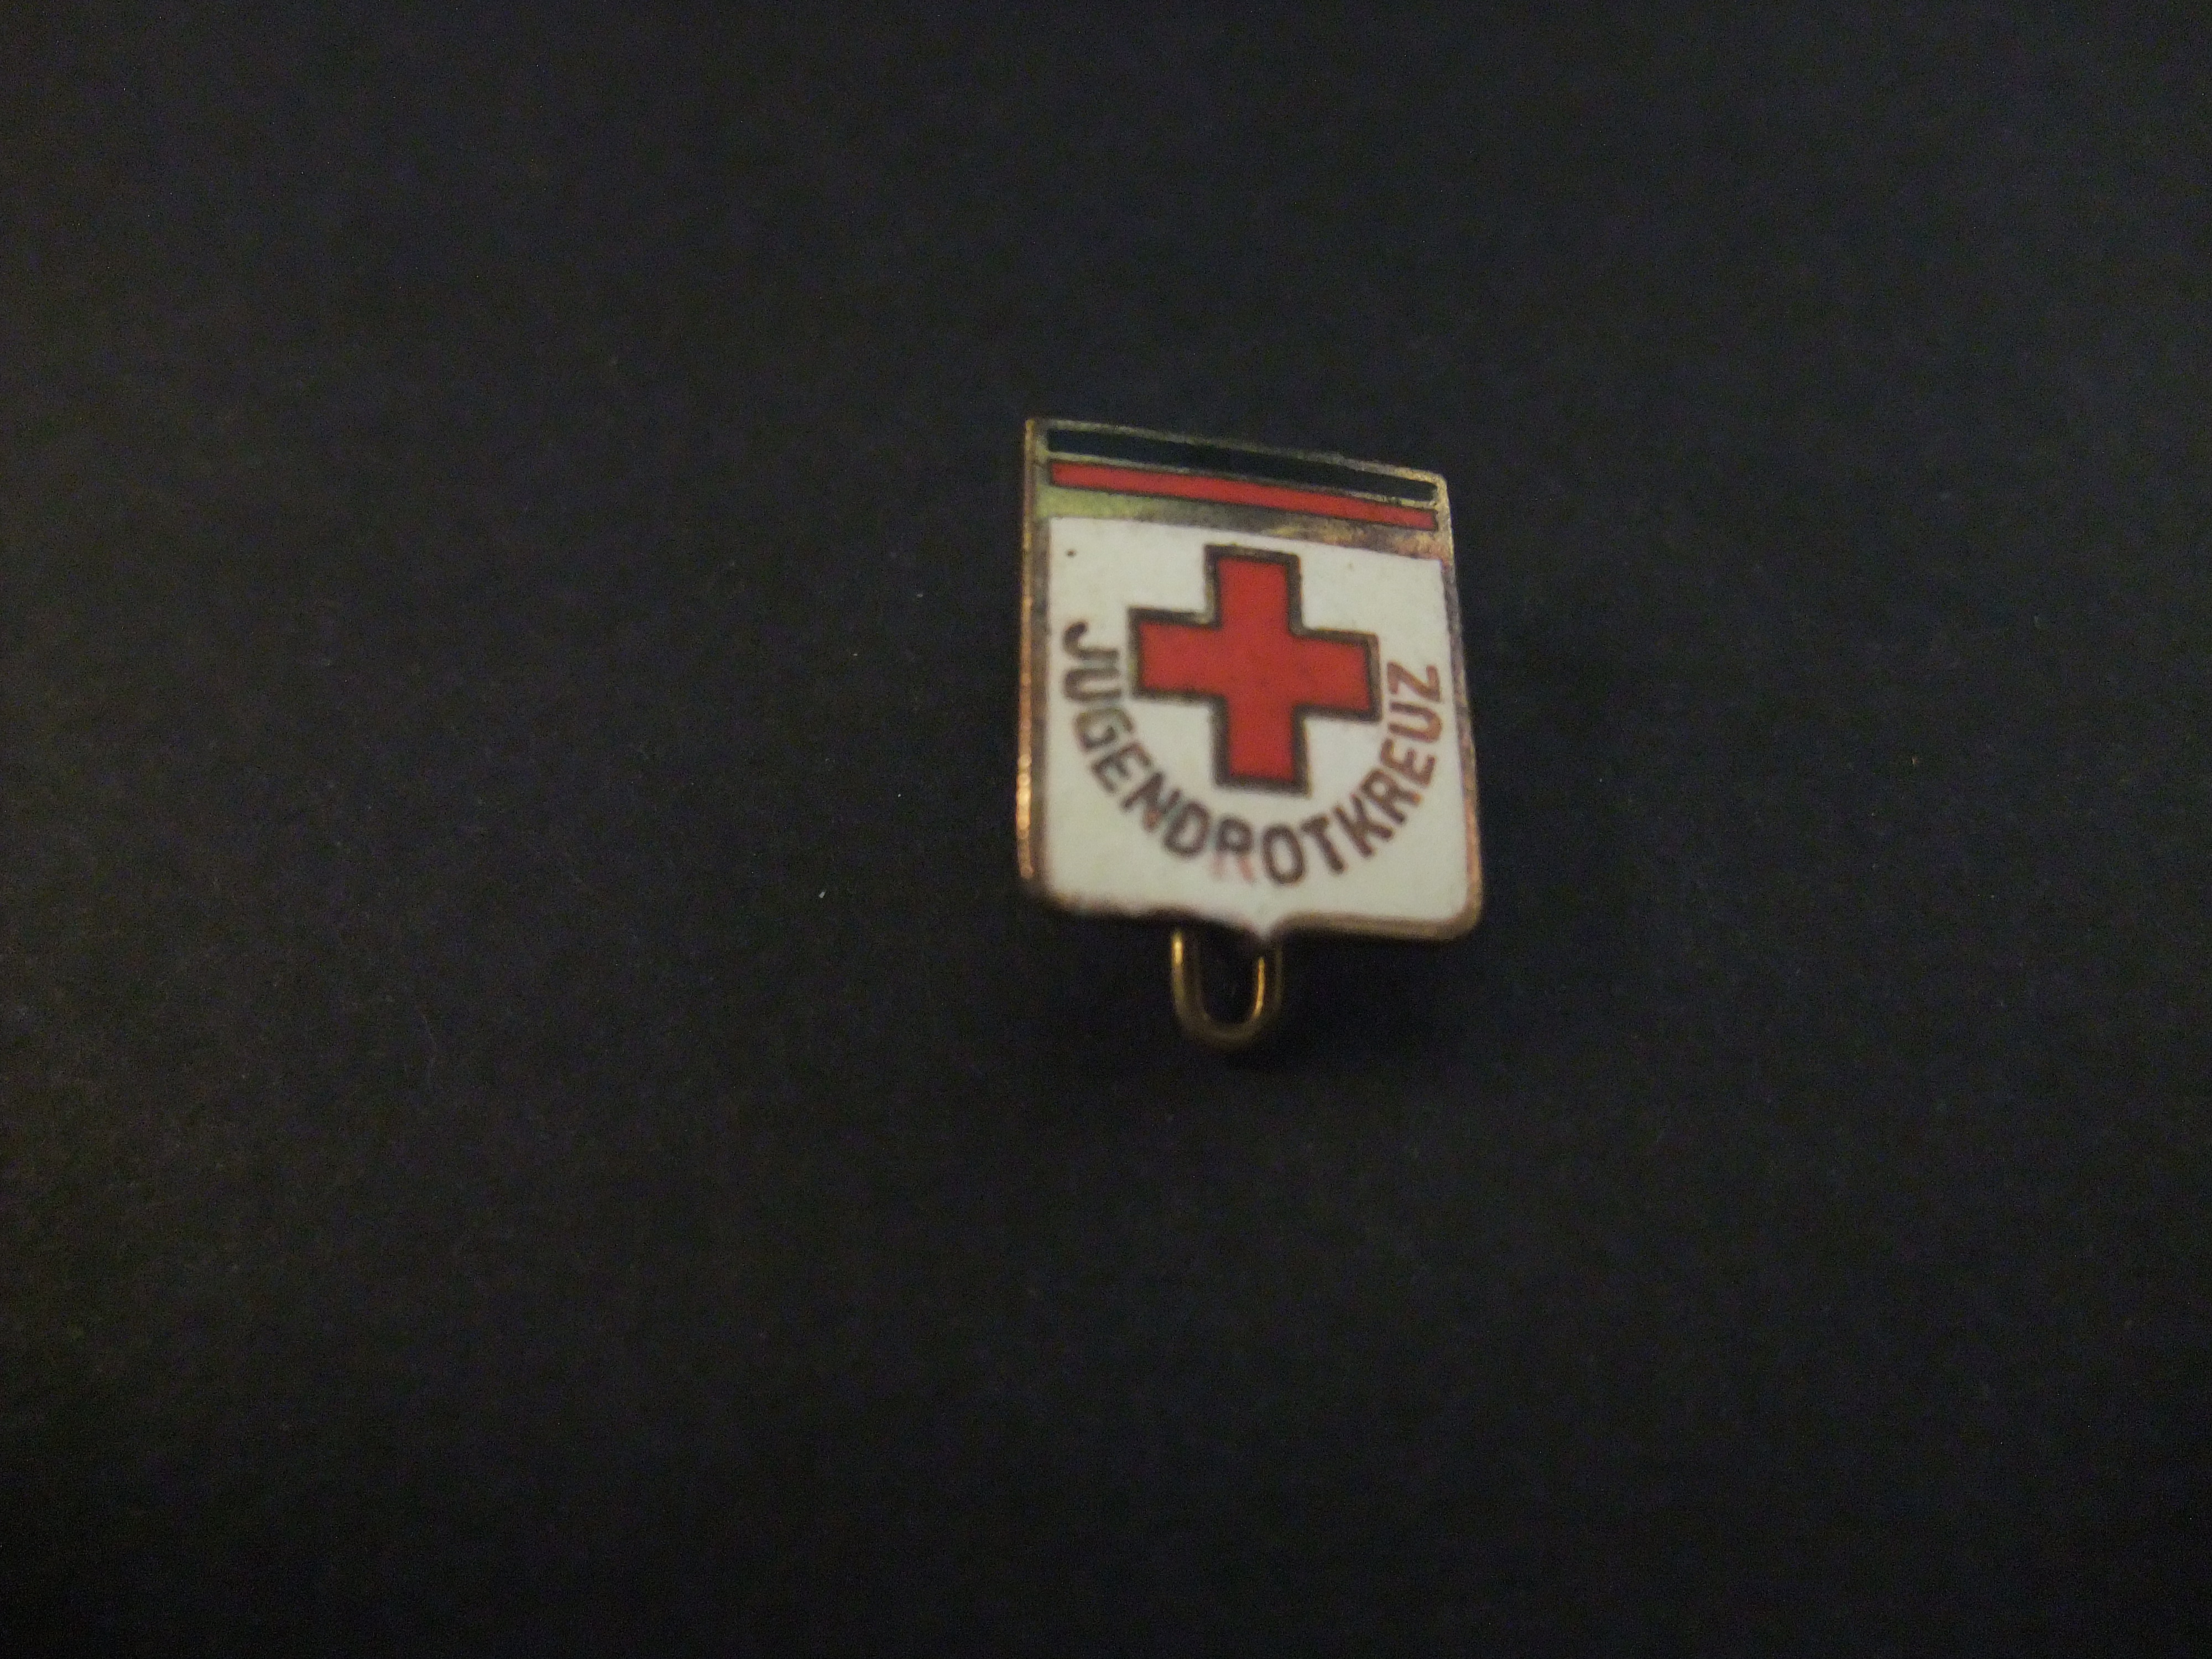 Jugendrotkreuz (Duitse Rode Kruis)